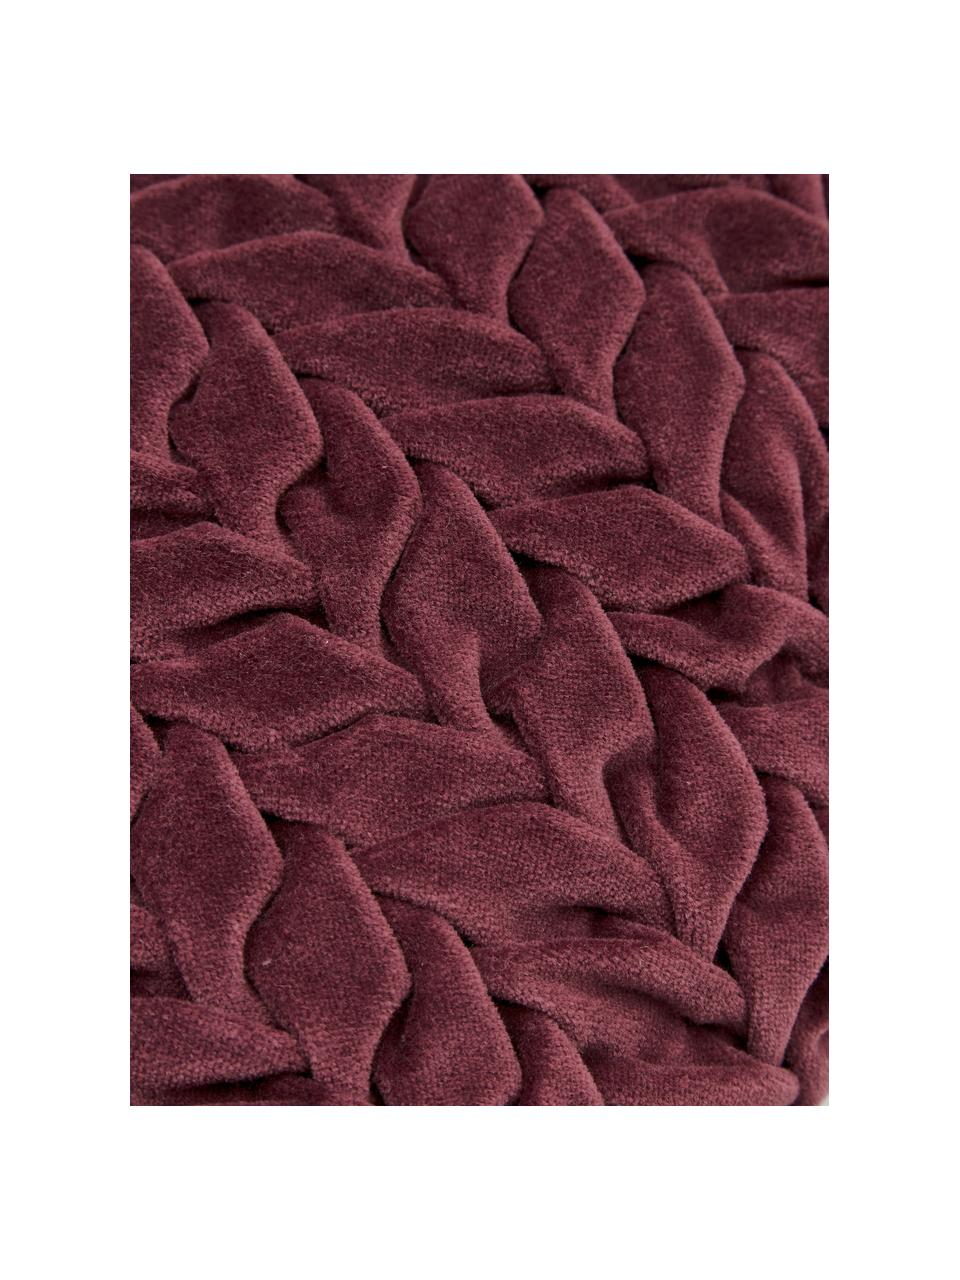 Samt-Kissen Smock in Weinrot mit geraffter Oberfläche, mit Inlett, Bezug: 100% Baumwollsamt, Rot, 30 x 50 cm